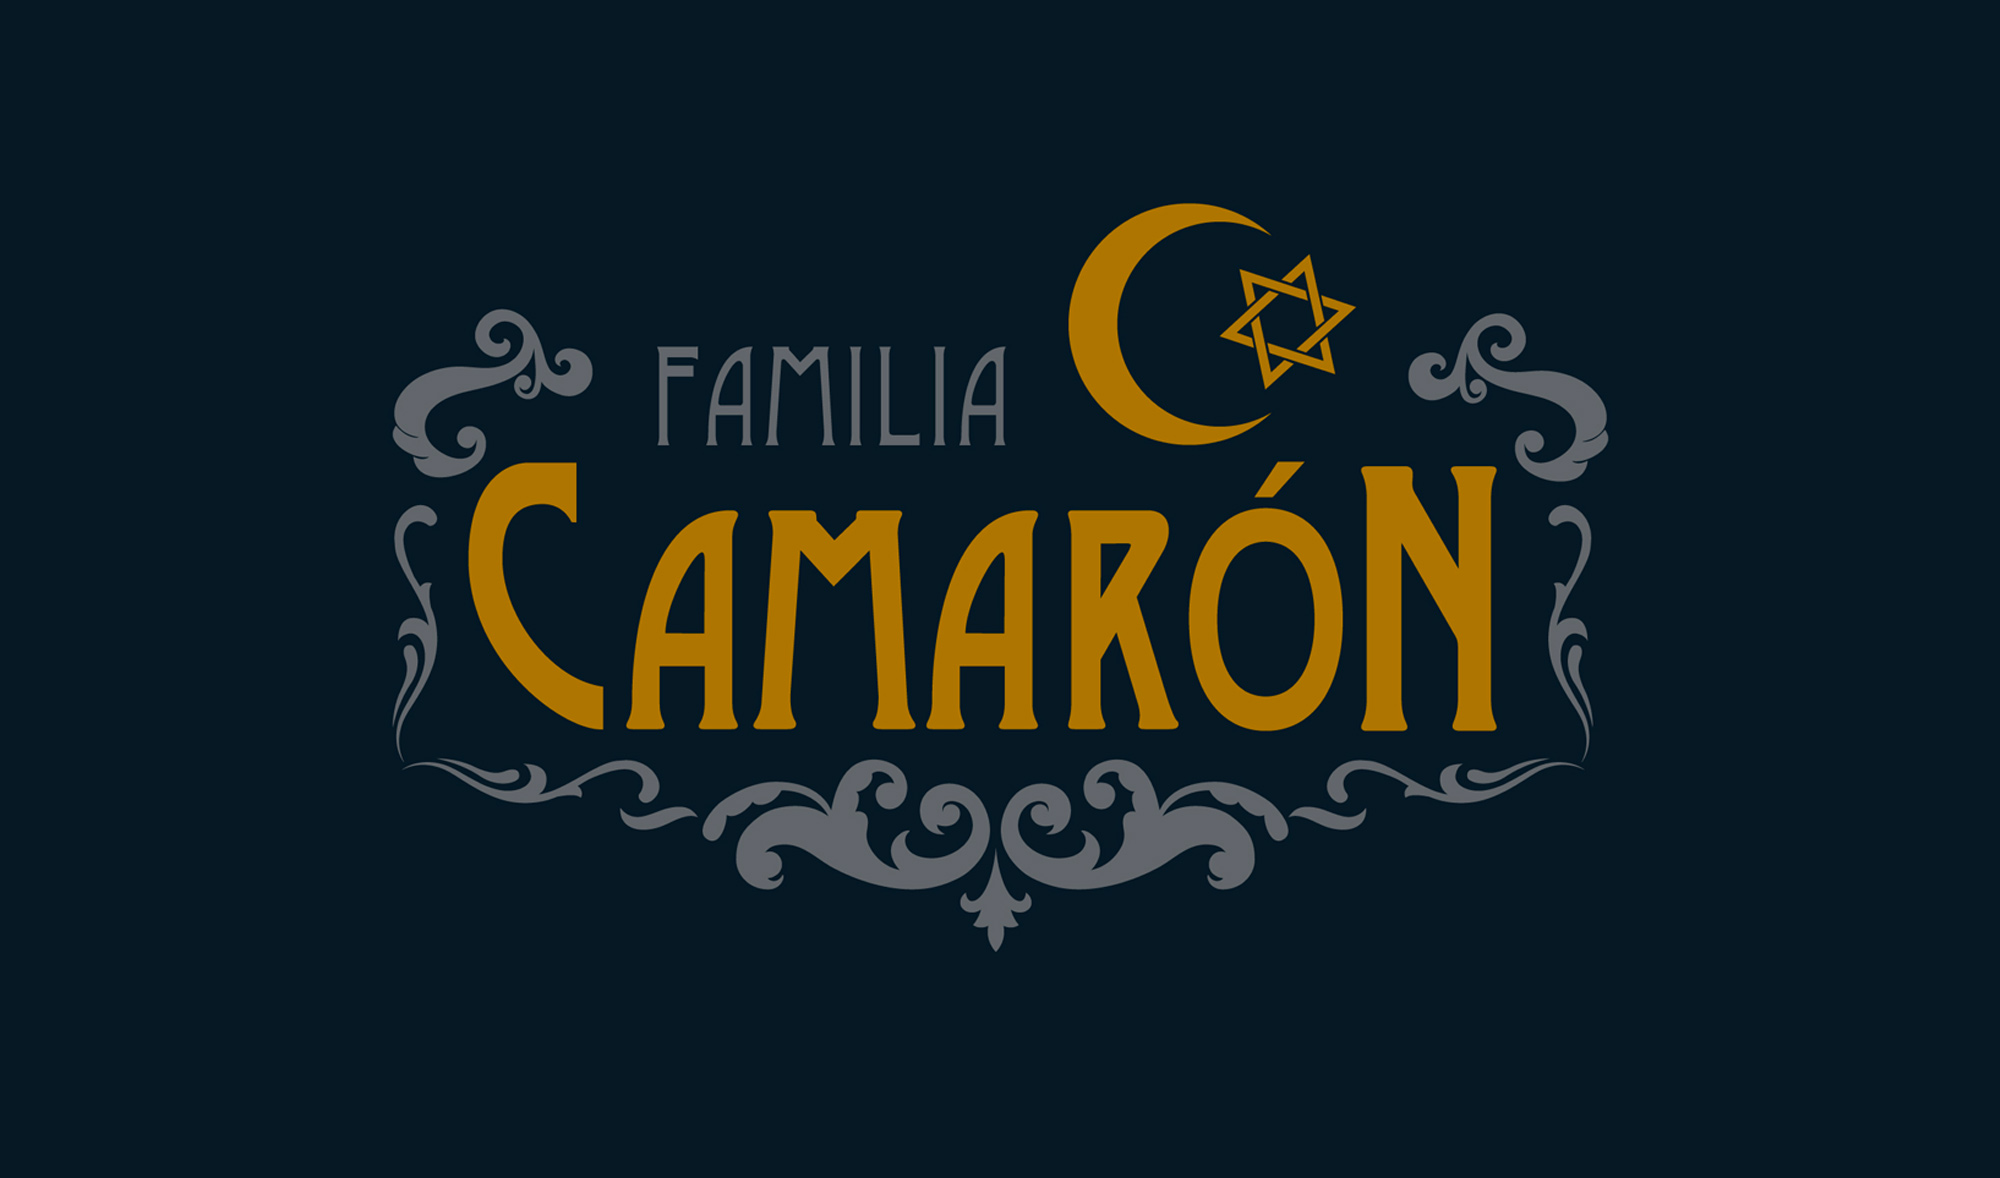 Familia Camarón - Logotipo principal